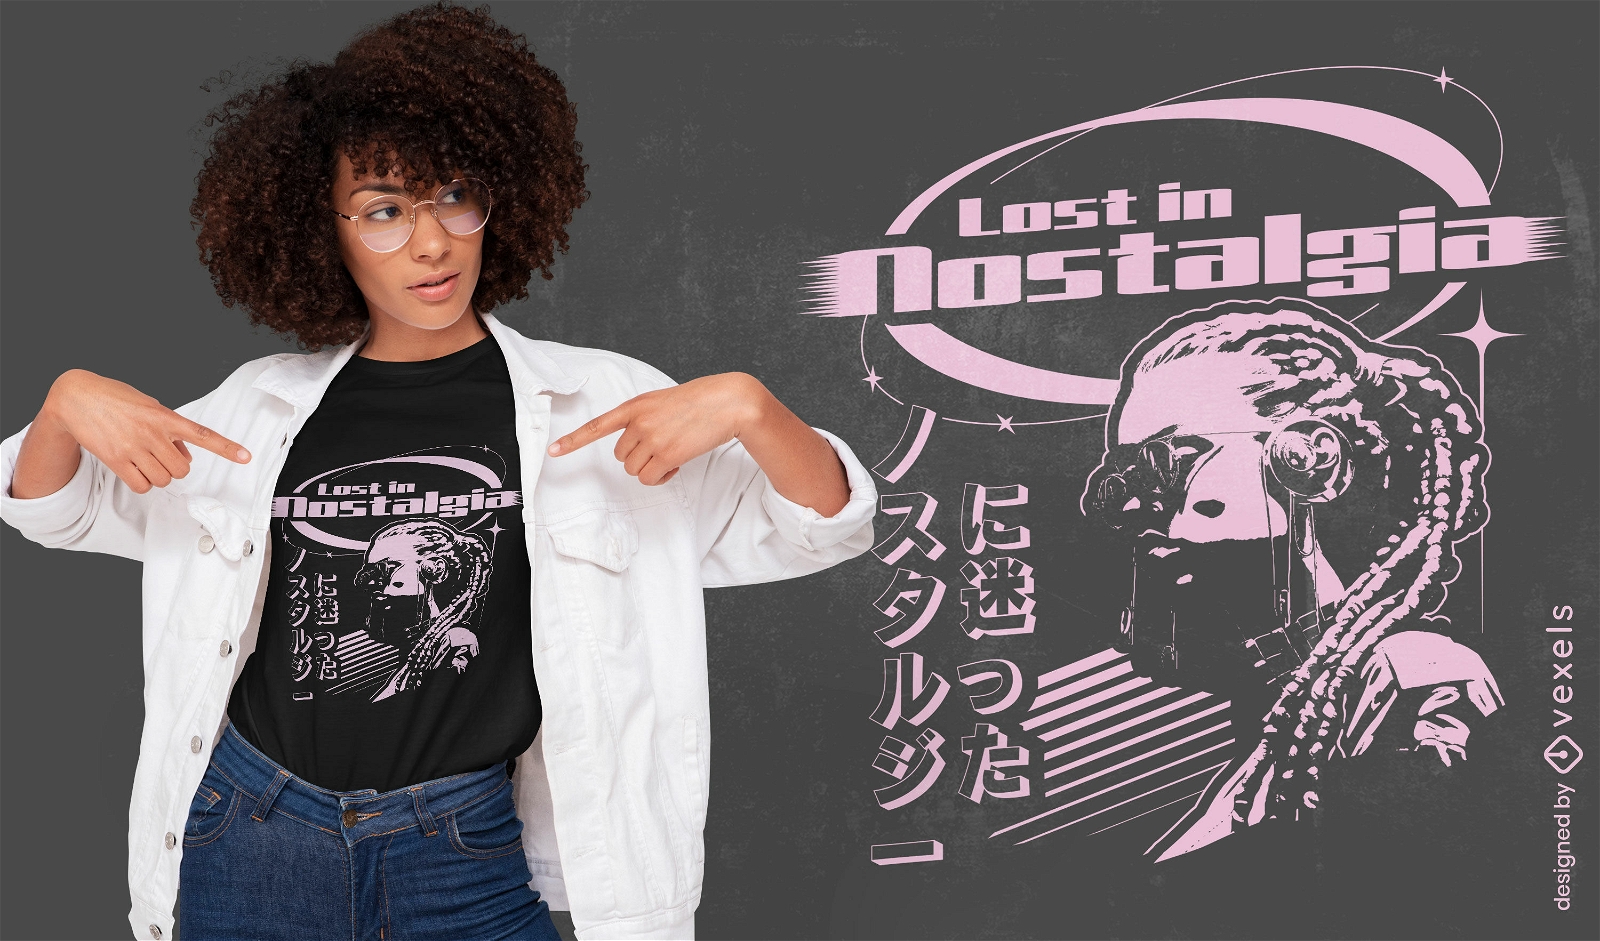 Verloren im Nostalgie-T-Shirt-Design